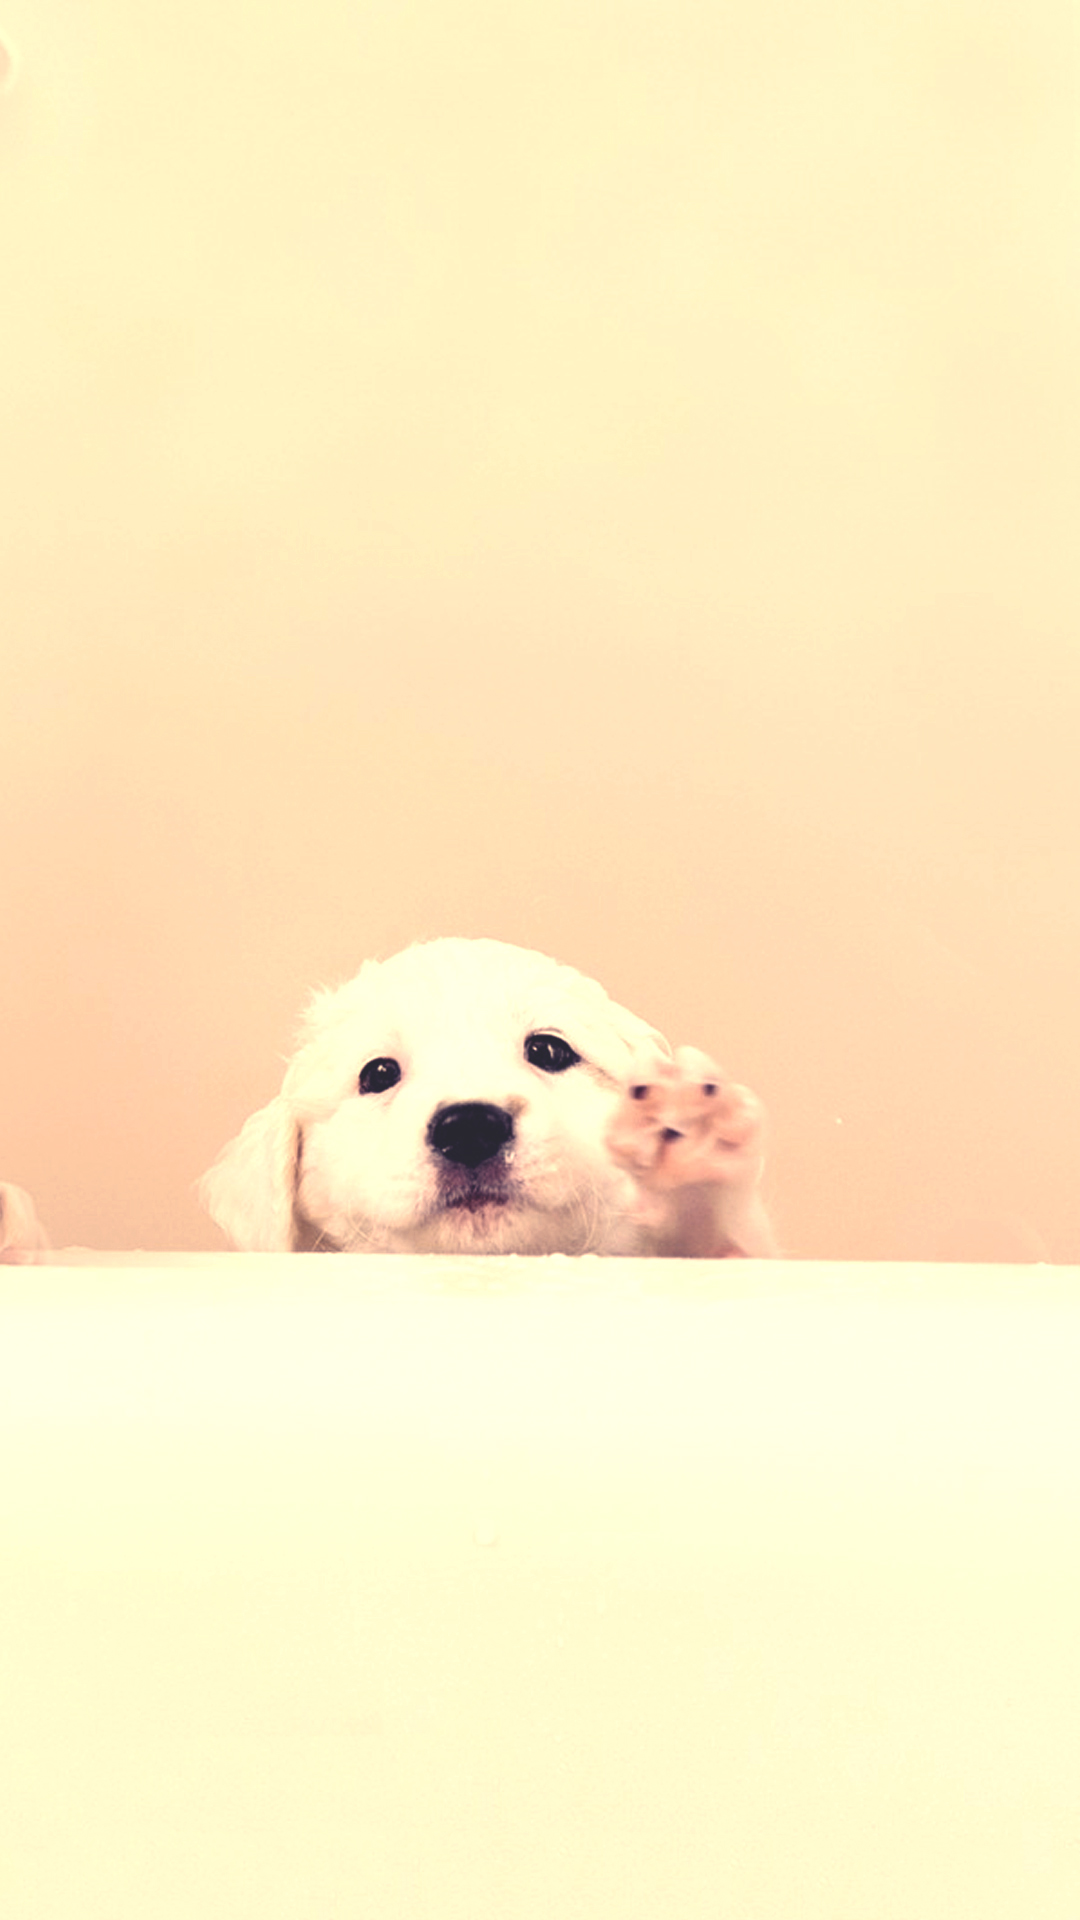 画像 可愛い犬ワンちゃんのイラスト スマホ Iphone壁紙 画像